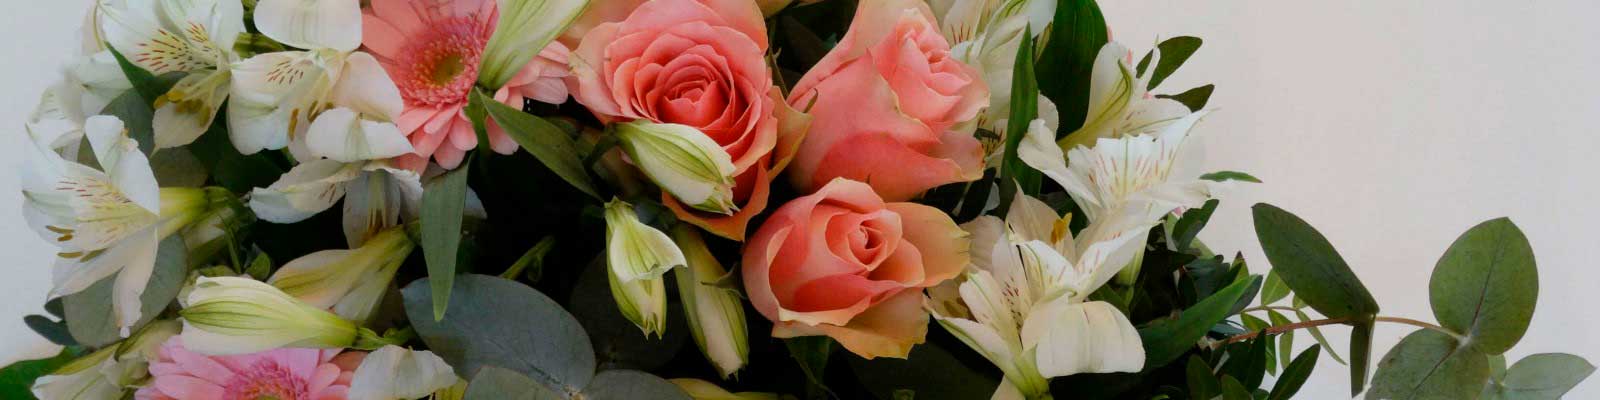 Arreglos Florales Exóticos con Rosas